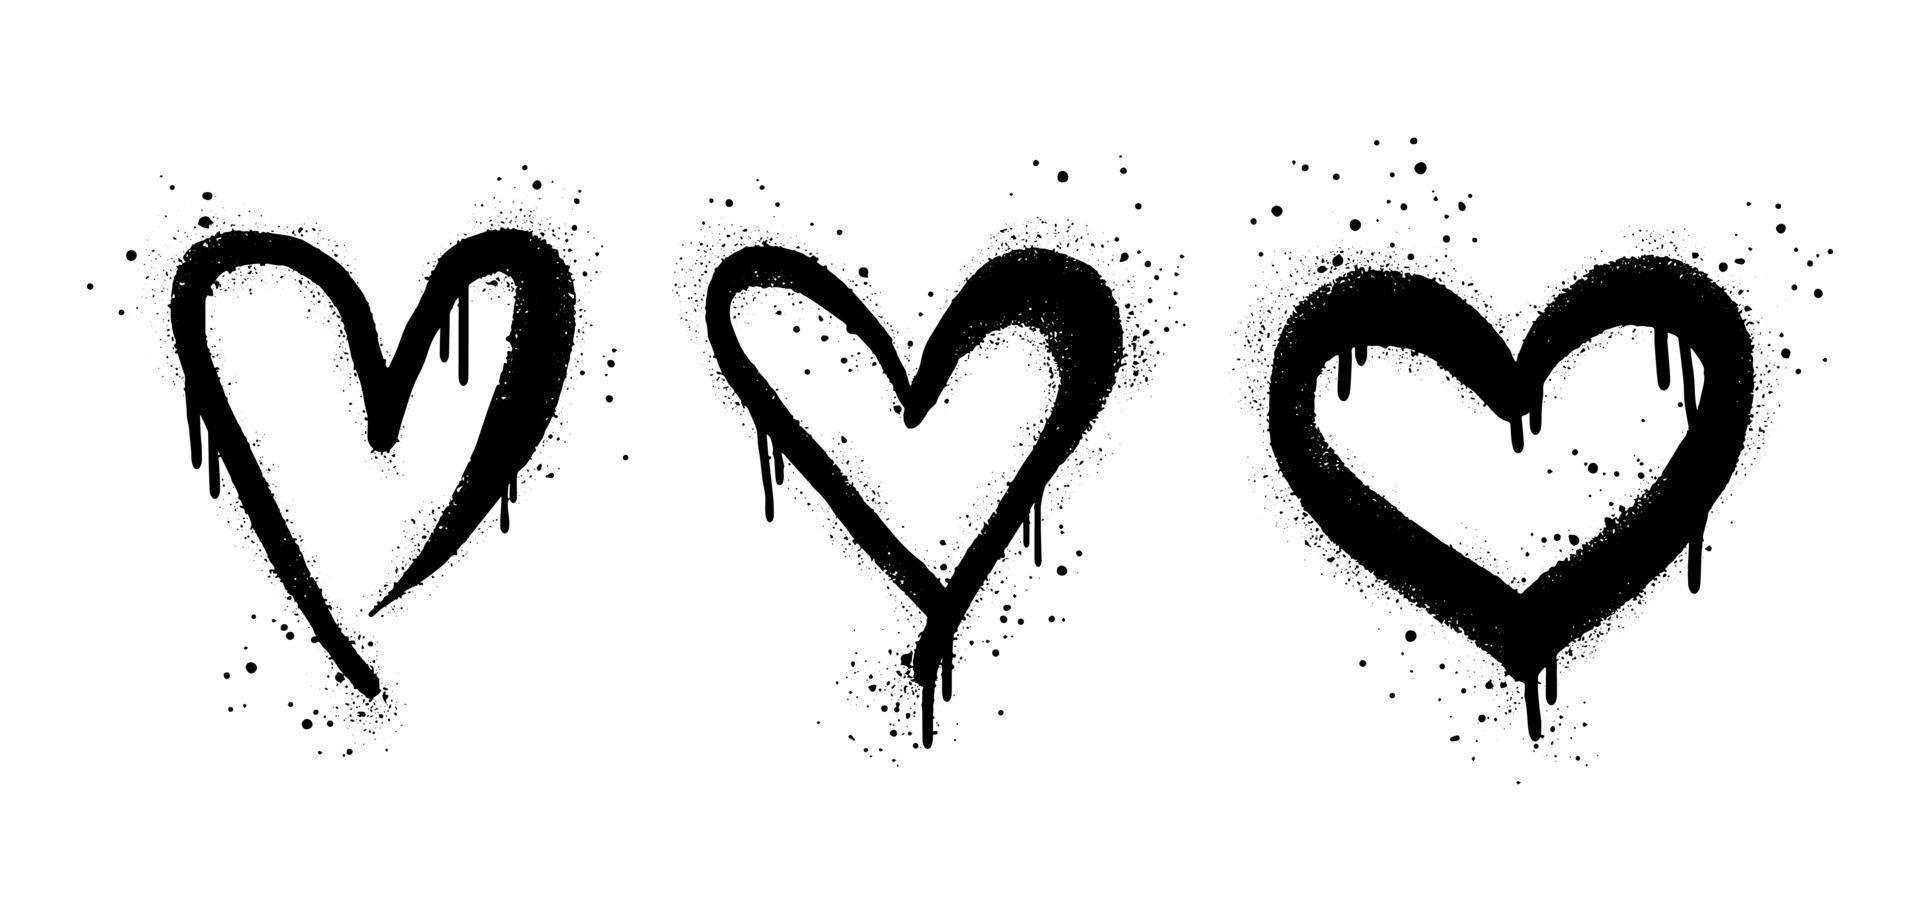 samling av spray målad graffiti hjärta tecken i svart över vit. kärlek hjärta droppa symbol. isolerat på vit bakgrund. vektor illustration